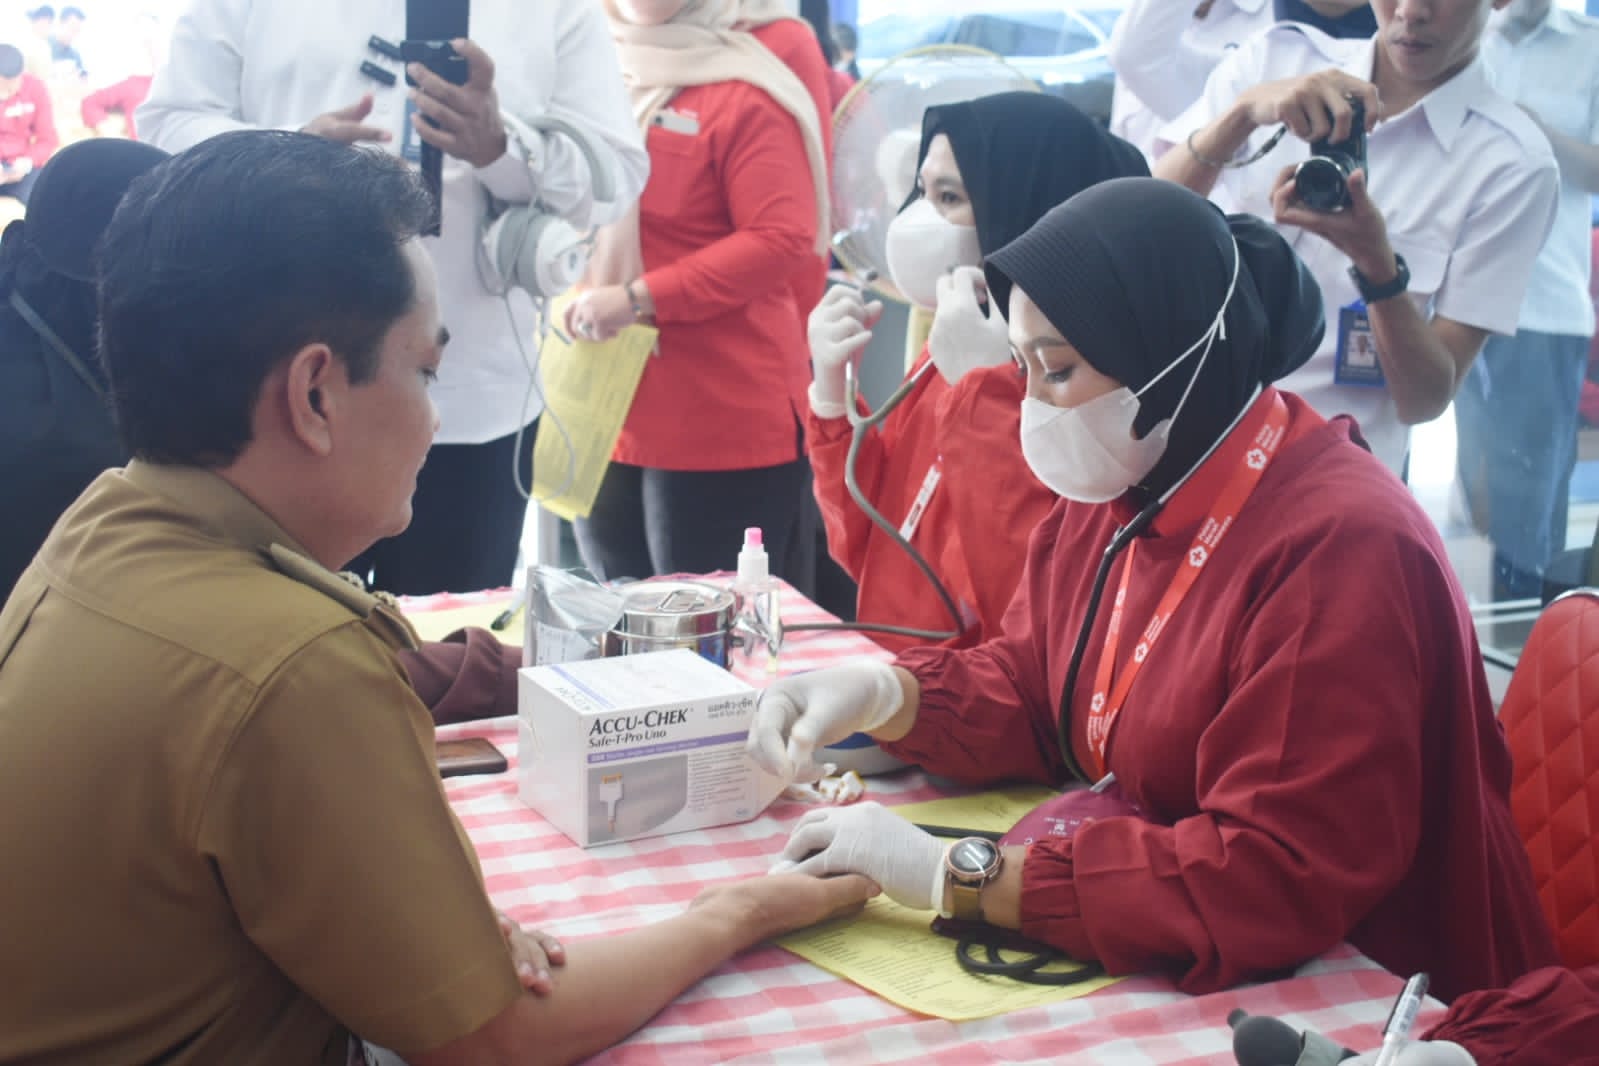 Wakil Wali Kota Pontianak, Bahasan tengah dilakukan pemeriksaan darah oleh petugas kesehatan. (Foto: Prokopim For KalbarOnline.com)